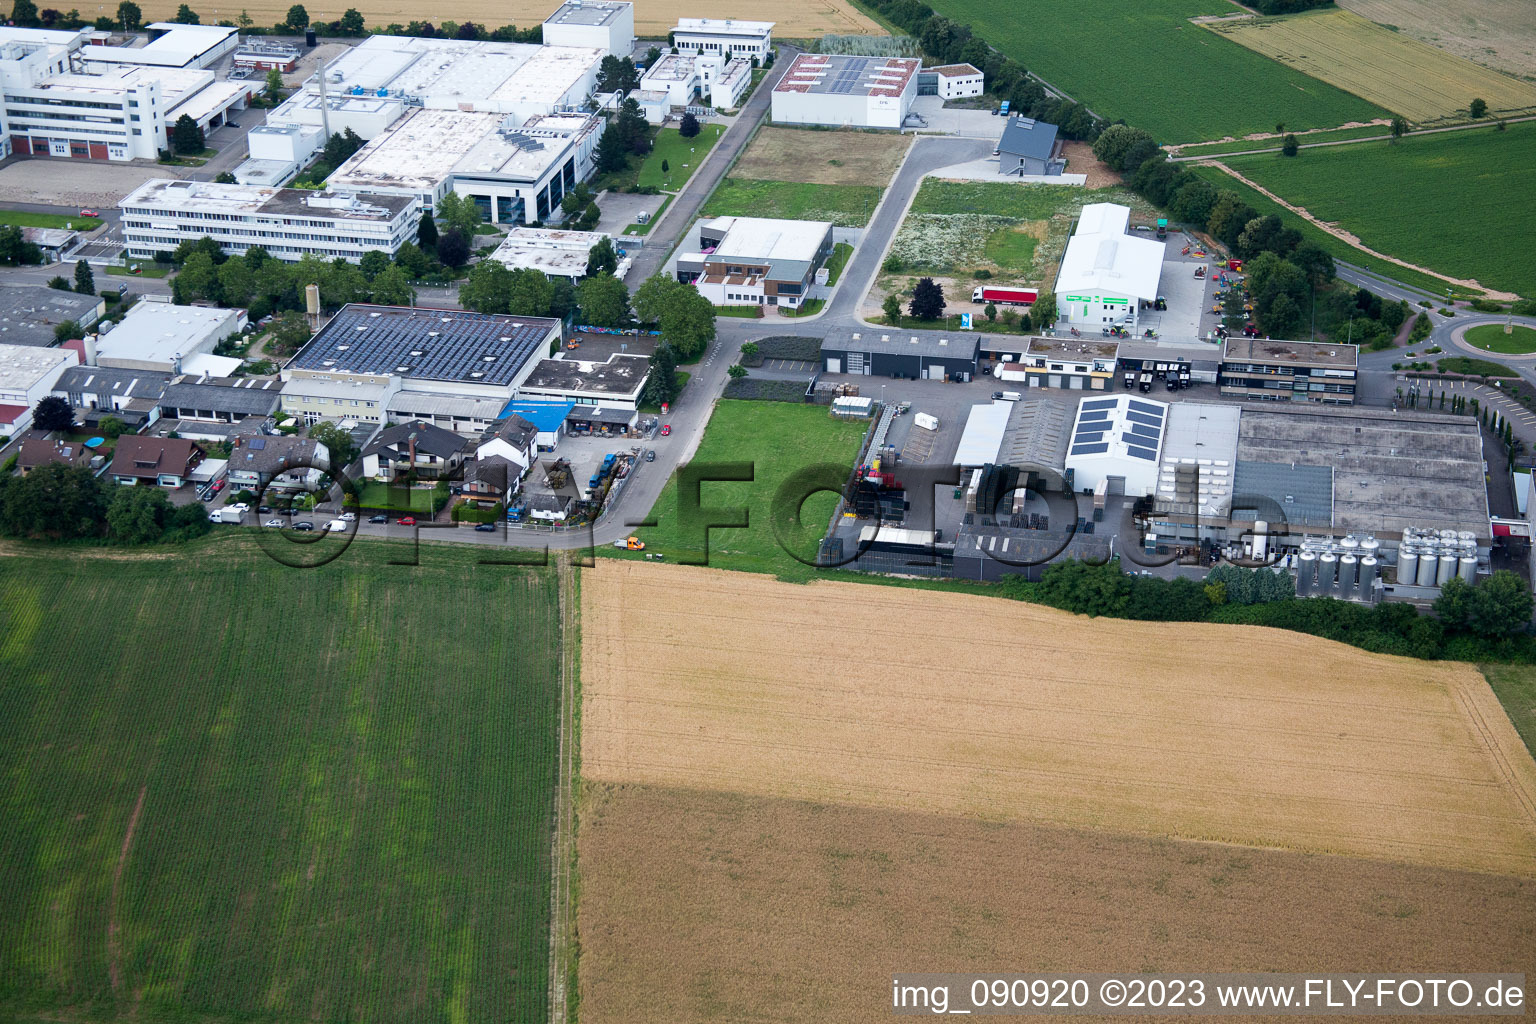 Plankstadt im Bundesland Baden-Württemberg, Deutschland aus der Luft betrachtet